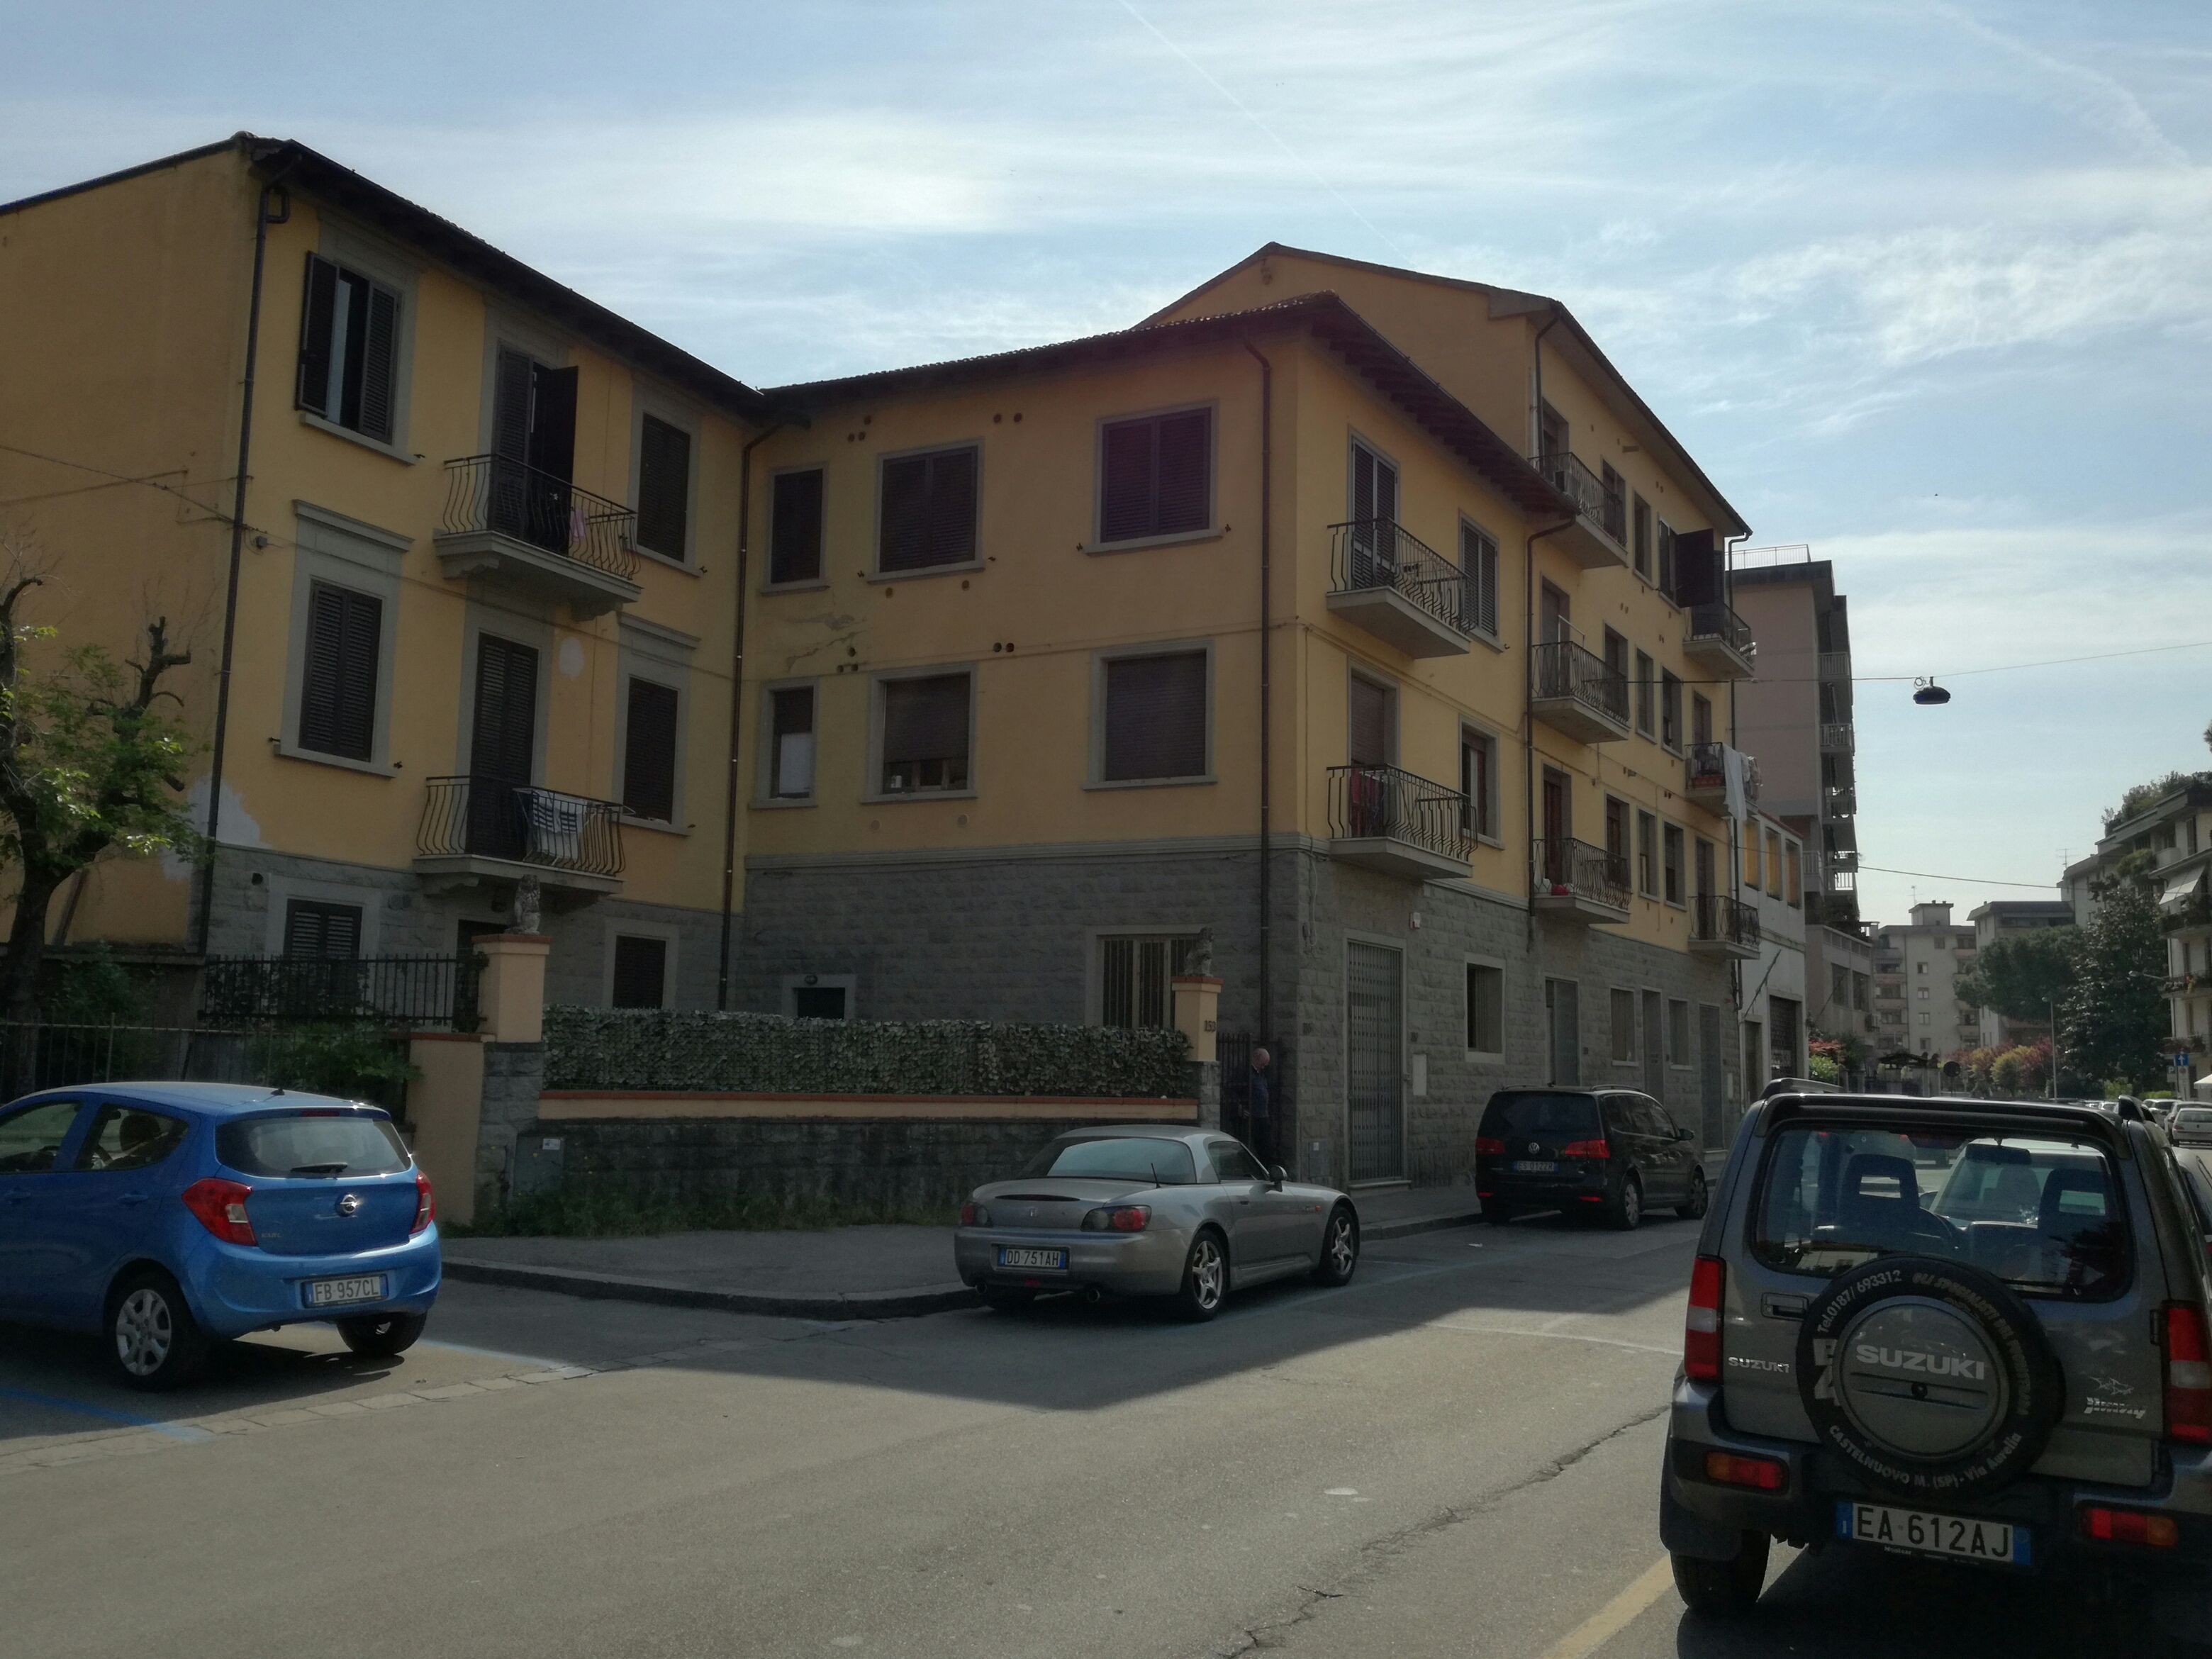 Immobile sotto sequestro in via Fra Bartolomeo a Prato (Fonte foto comune) 